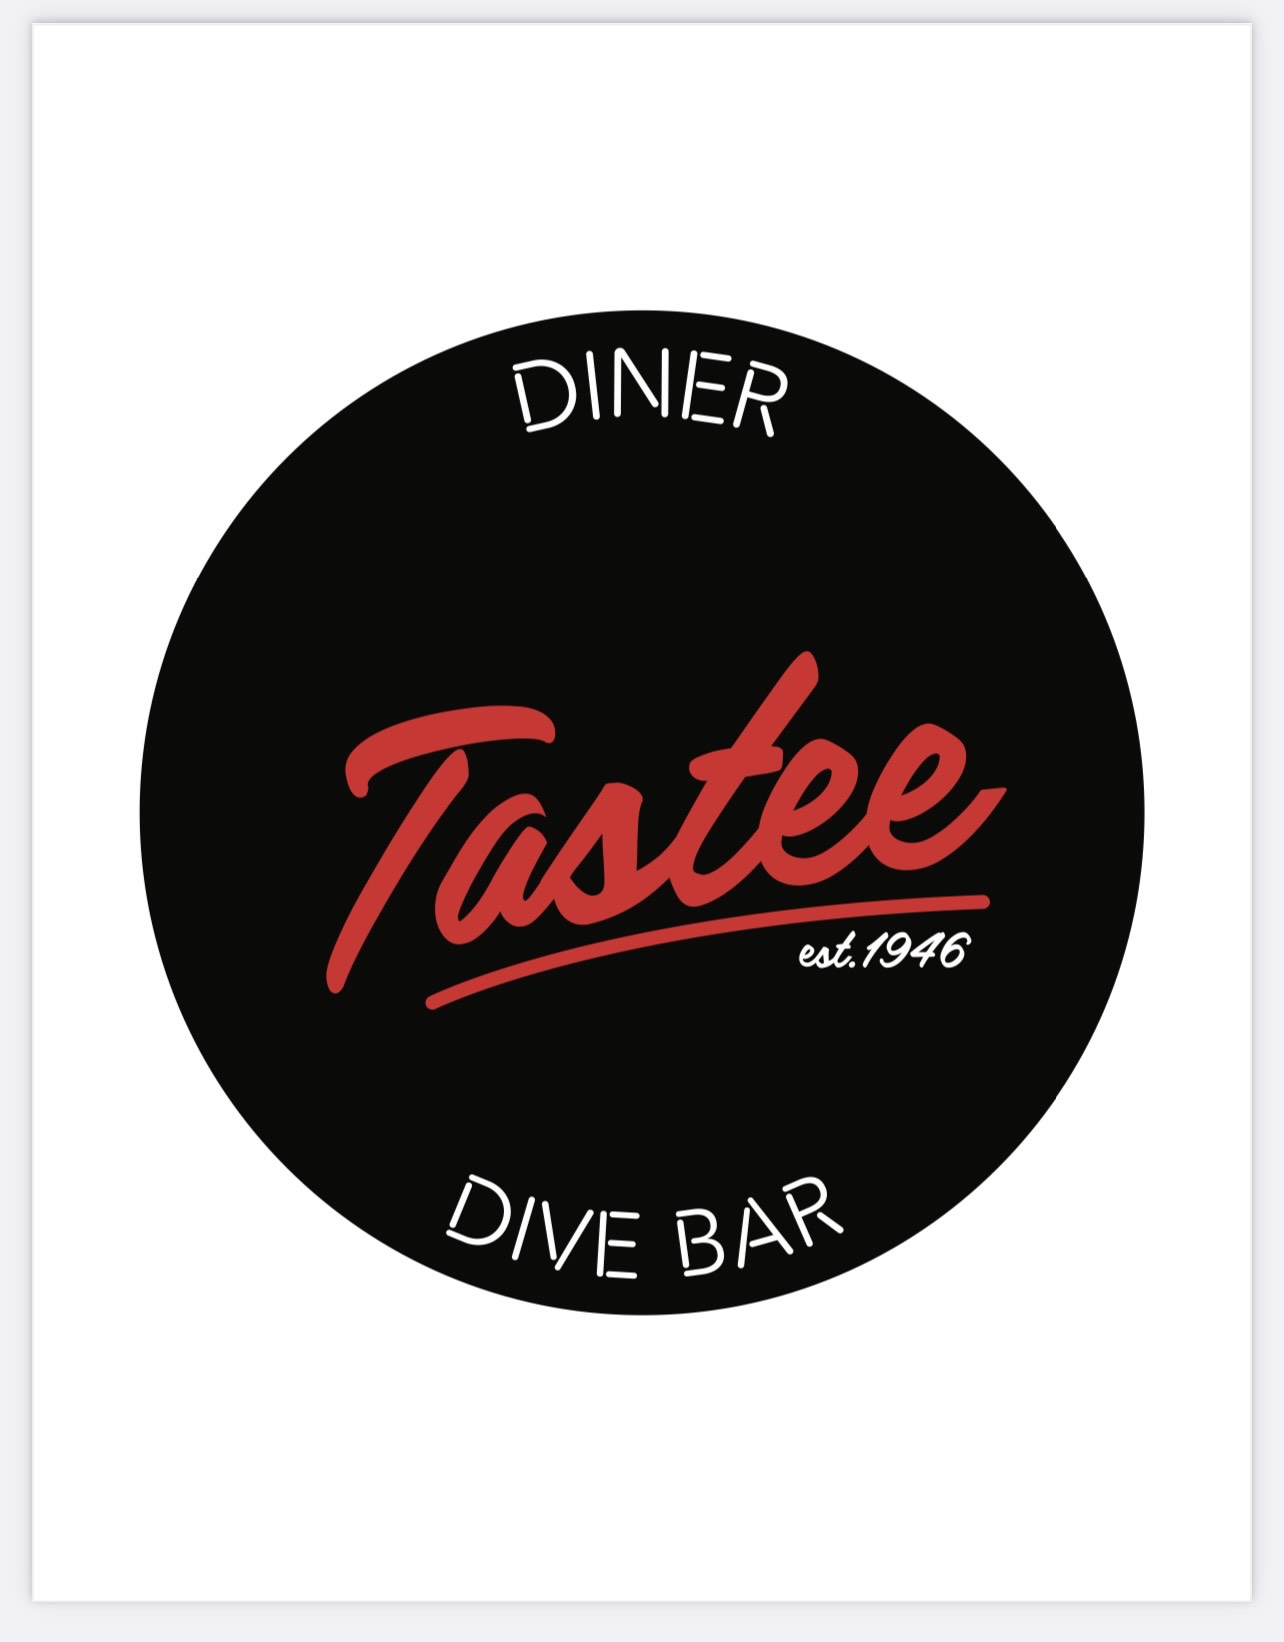 Tastee Diner